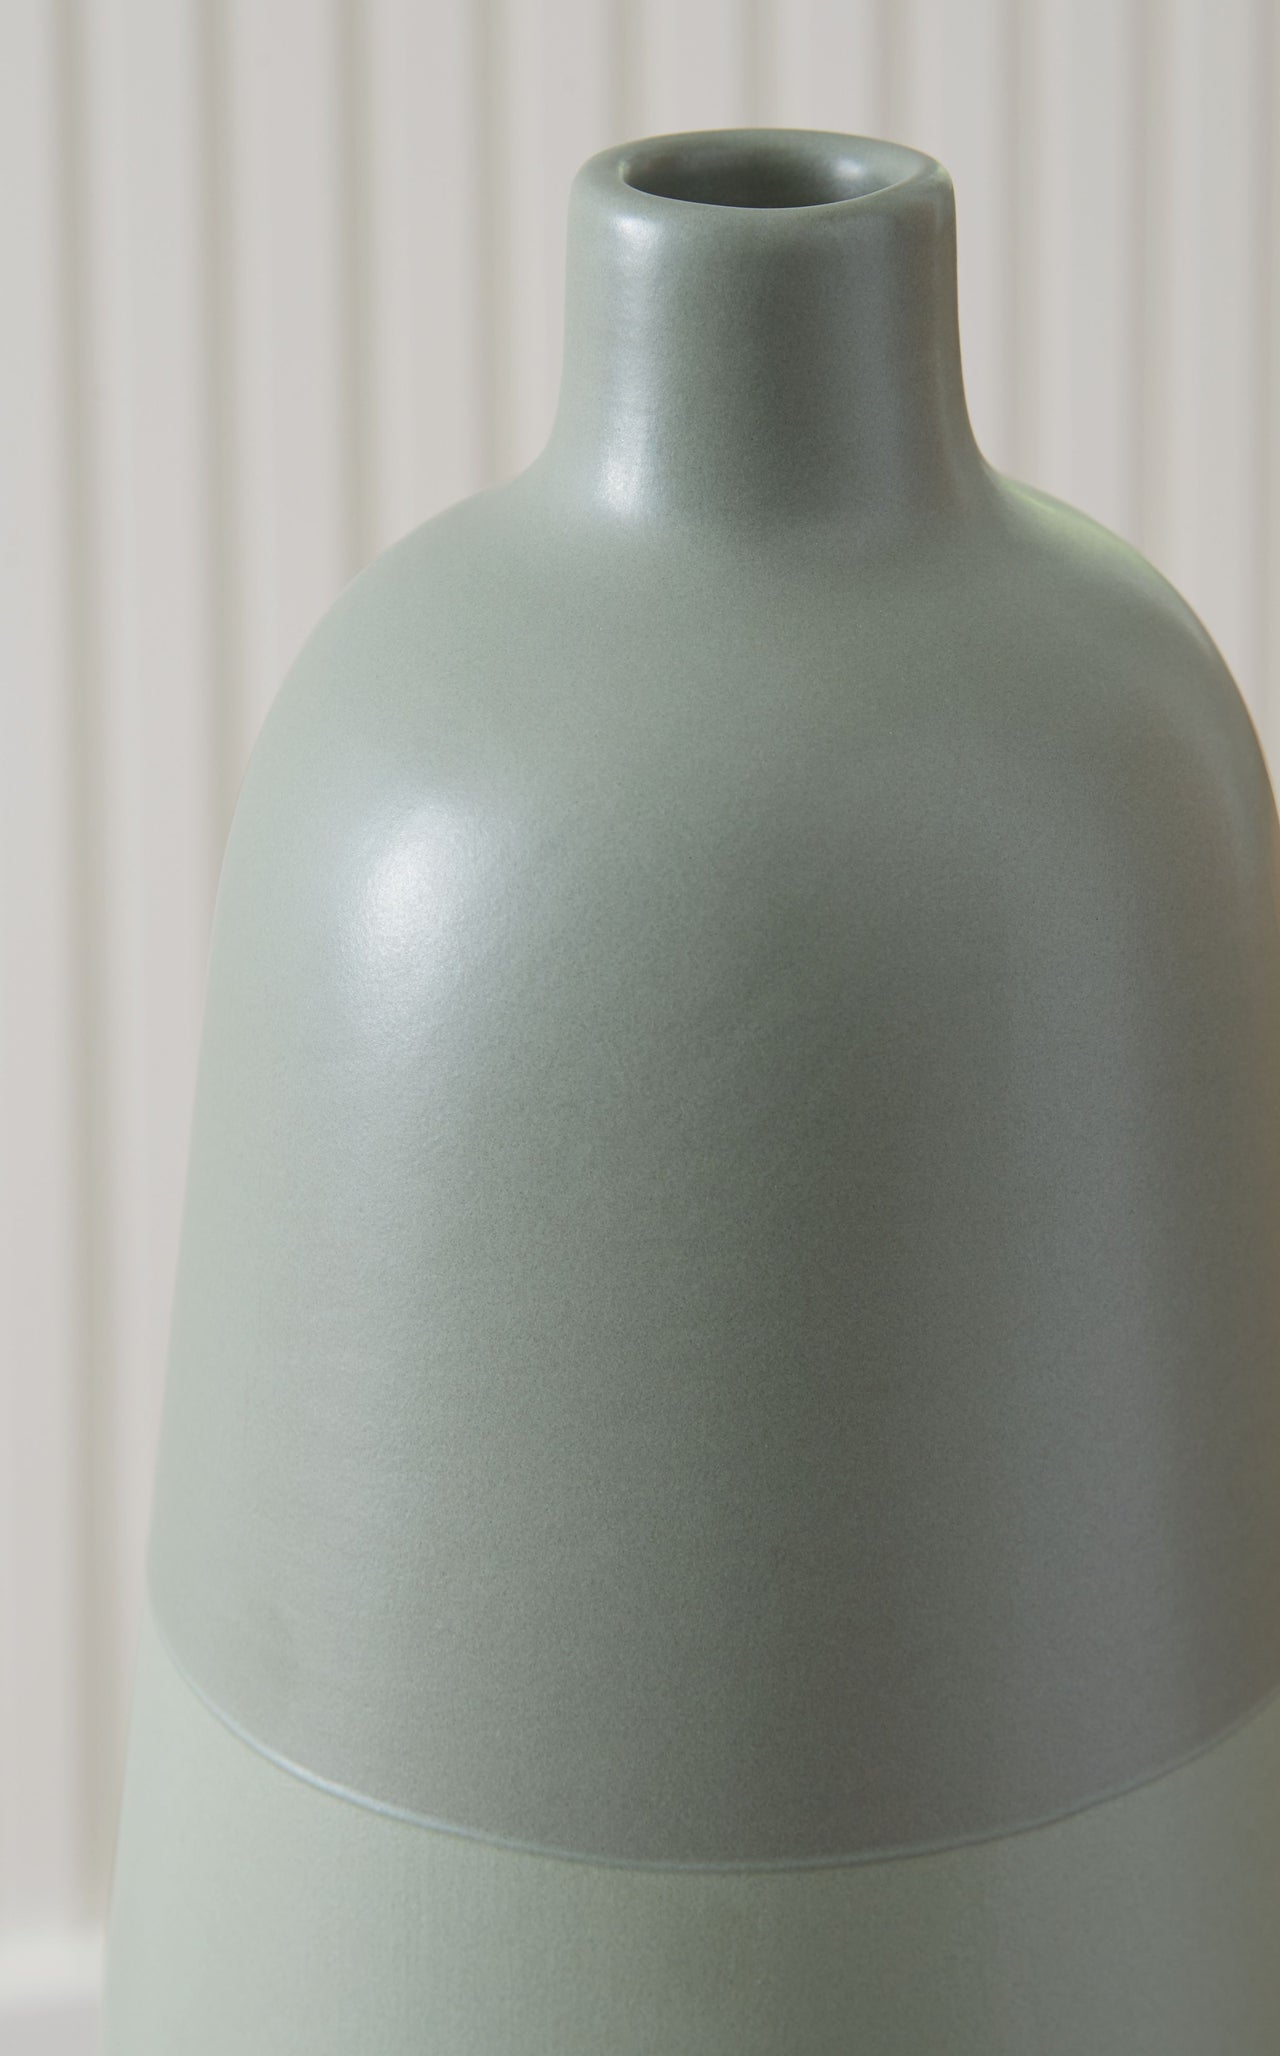 Peerland - Vase - Tony's Home Furnishings